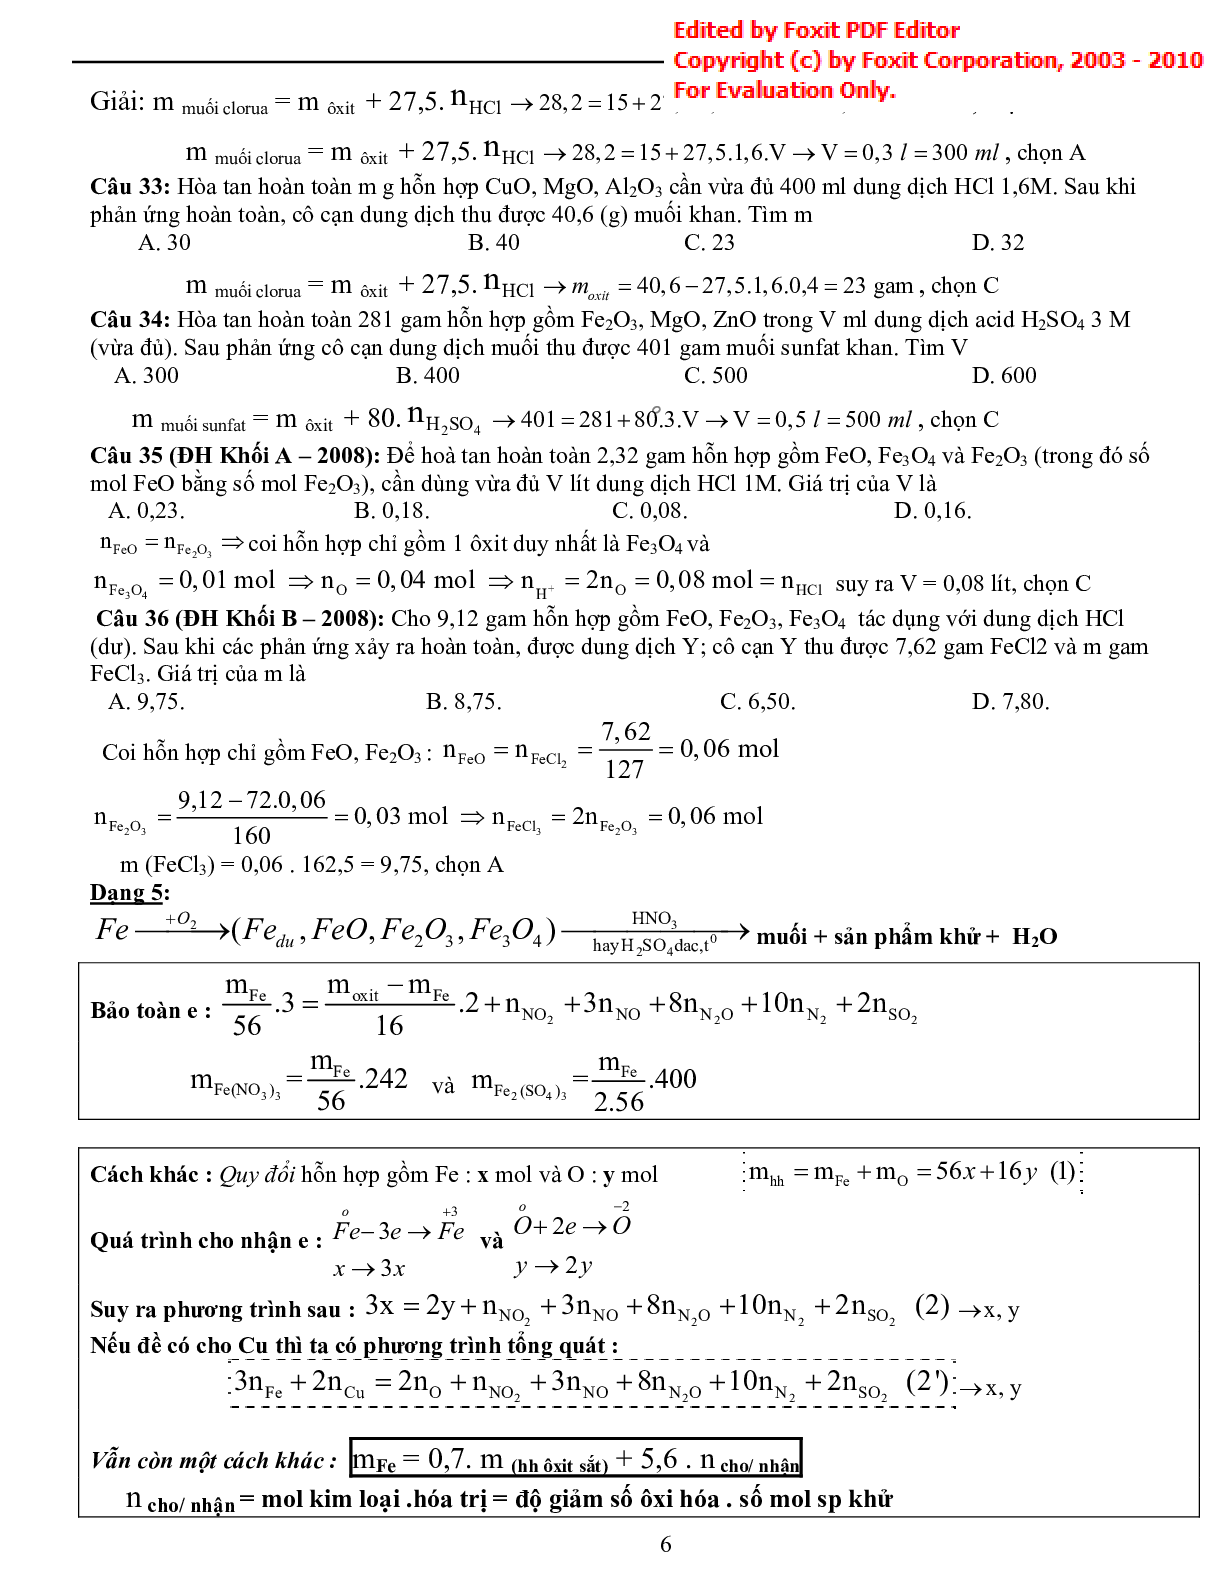 Bài tập về tổng hợp phương pháp giải nhanh hóa vô cơ có đáp án (trang 6)